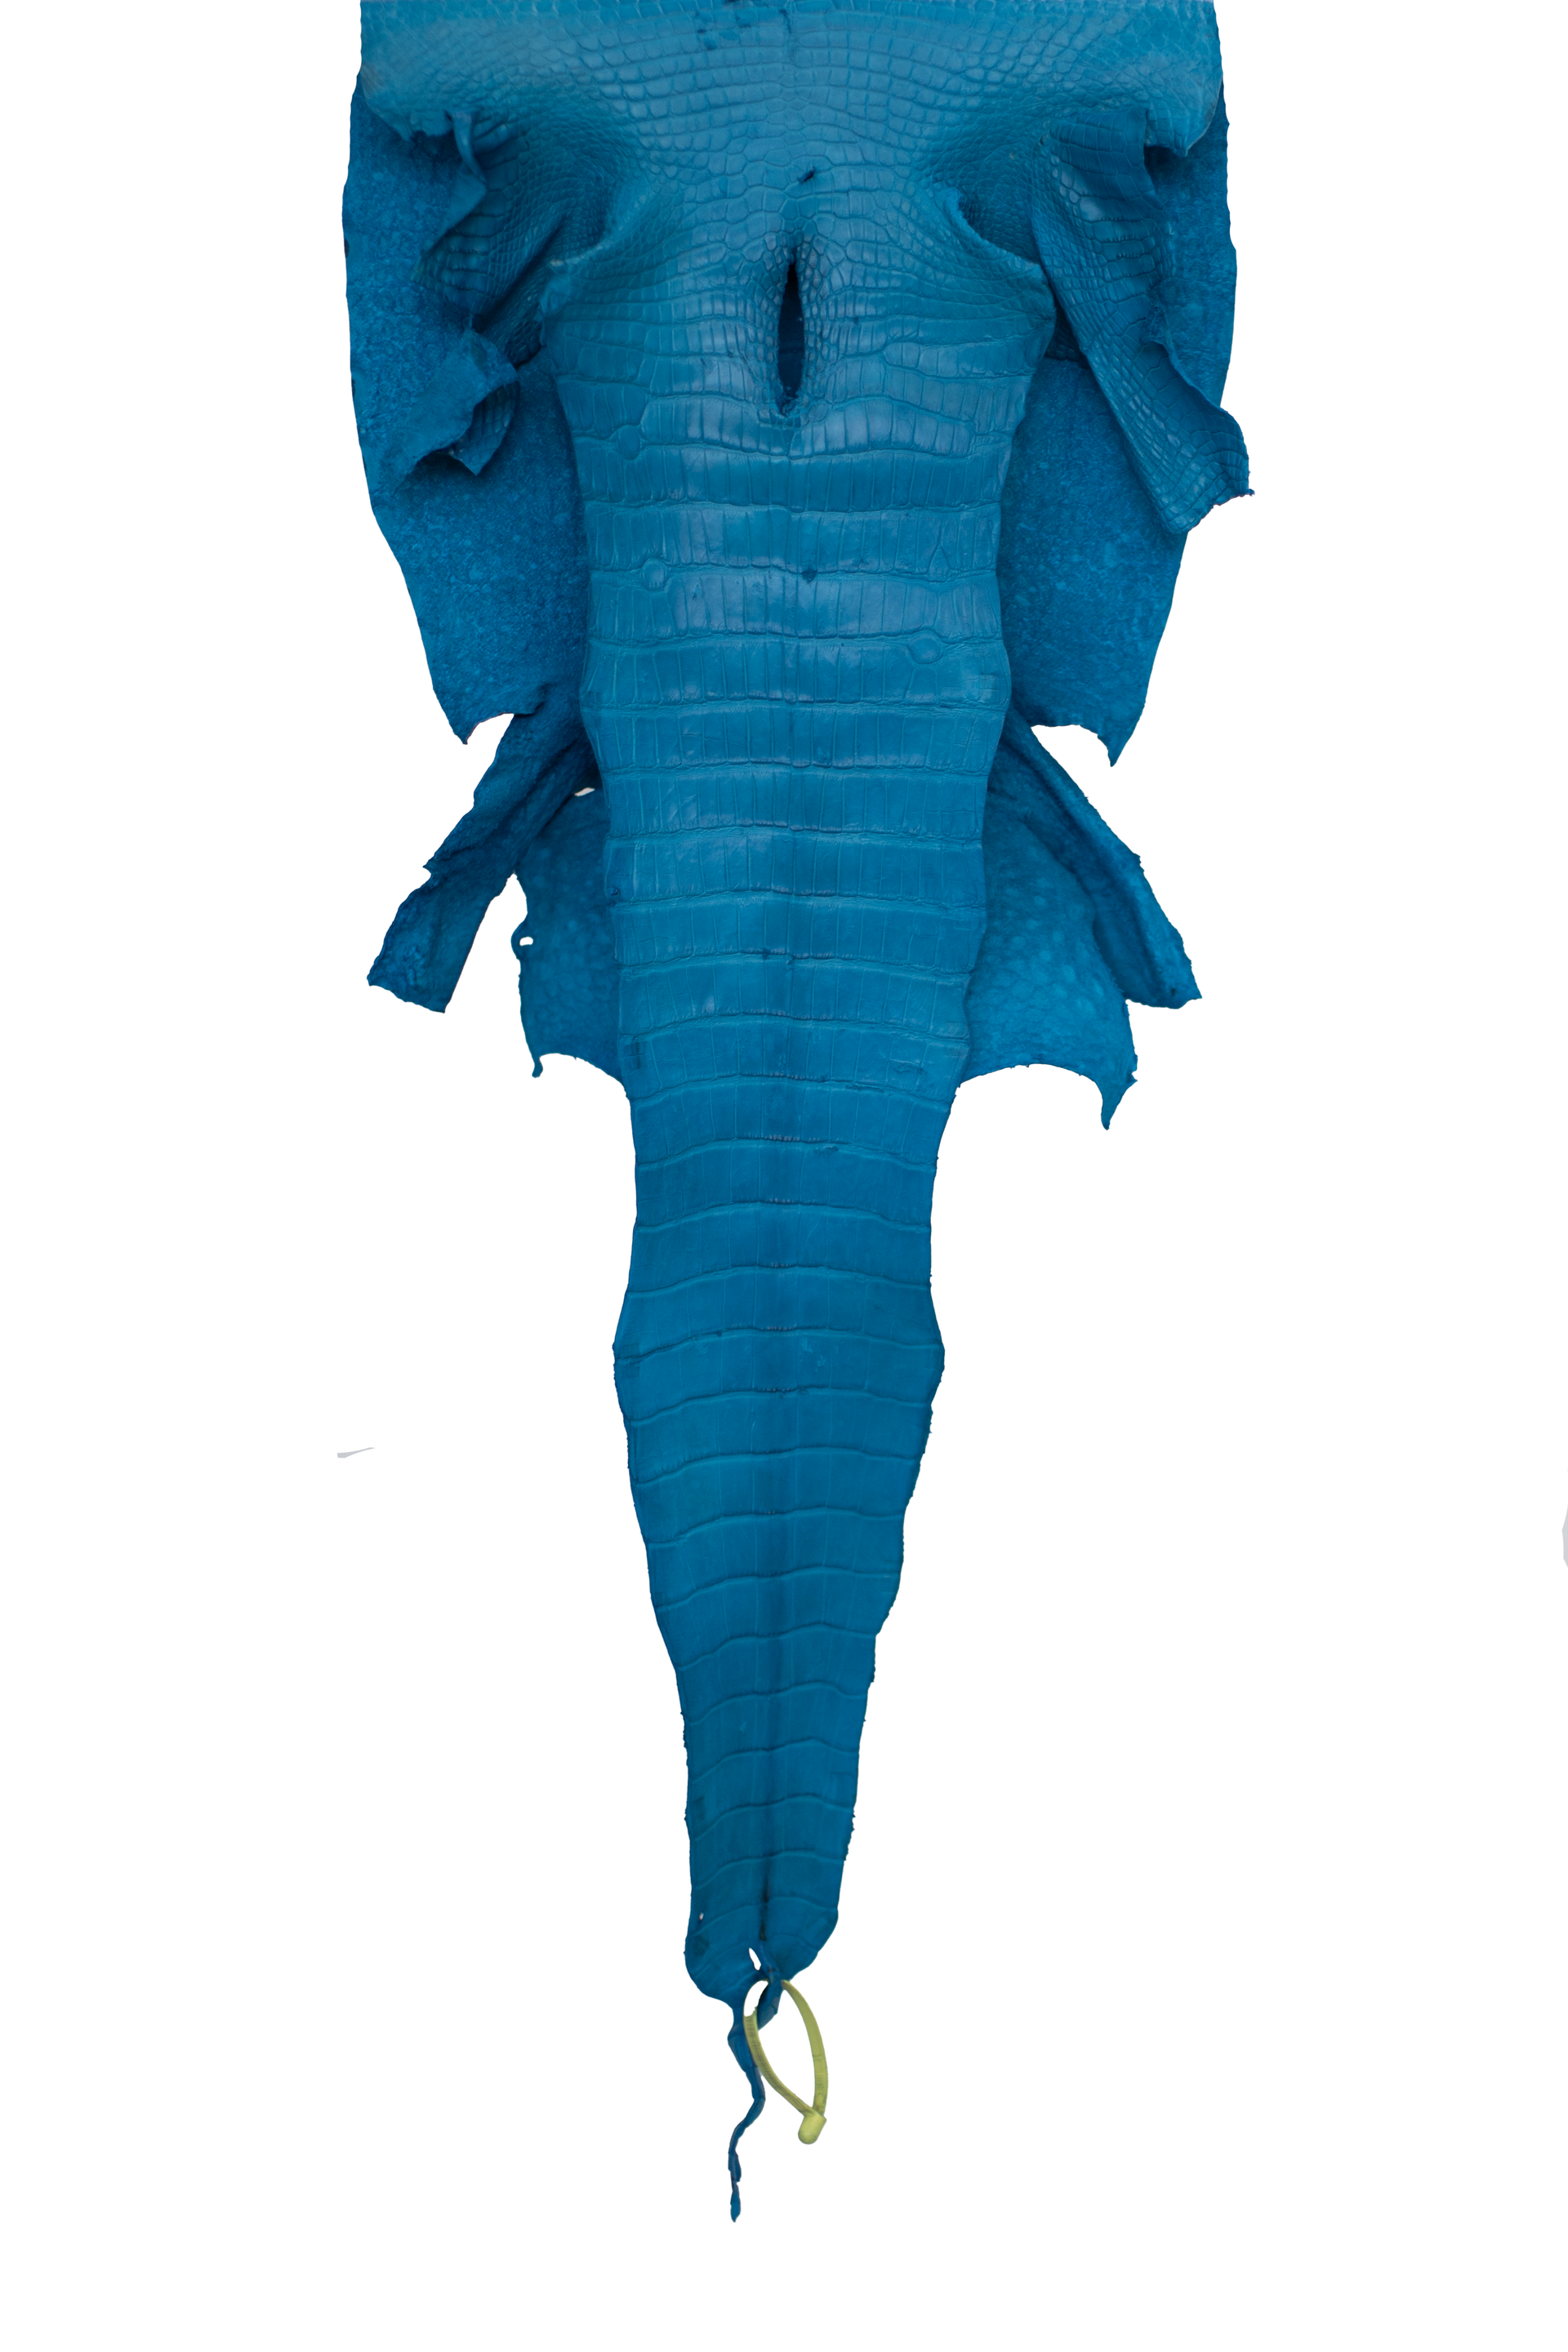 42 cm Grade 3/4 Ultramarine Matte Wild American Alligator Leather - Tag: LA22-0021594